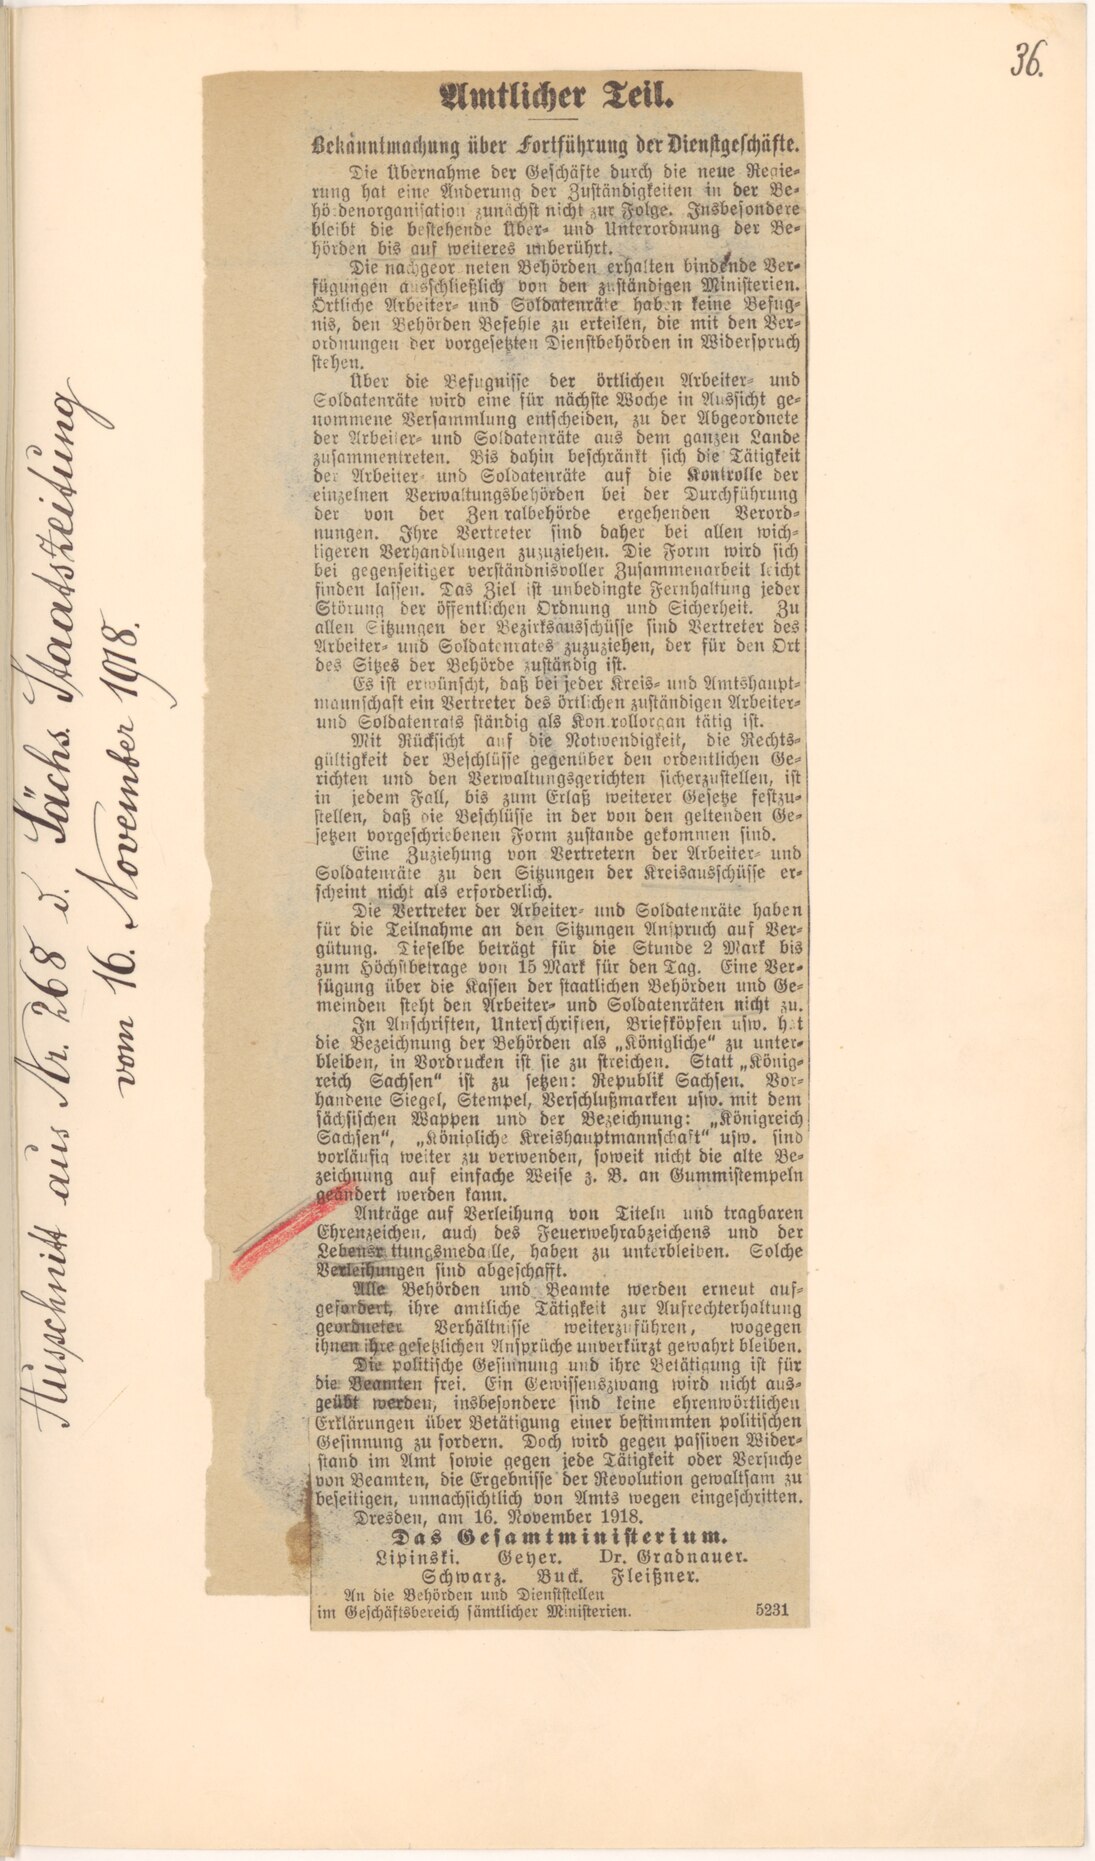 Regierungserklärung »Bekanntmachung über die Weiterführung der Dienstgeschäfte«, veröffentlicht in der Nr. 268 der Sächsischen Staatszeitung vom 16. November 1918